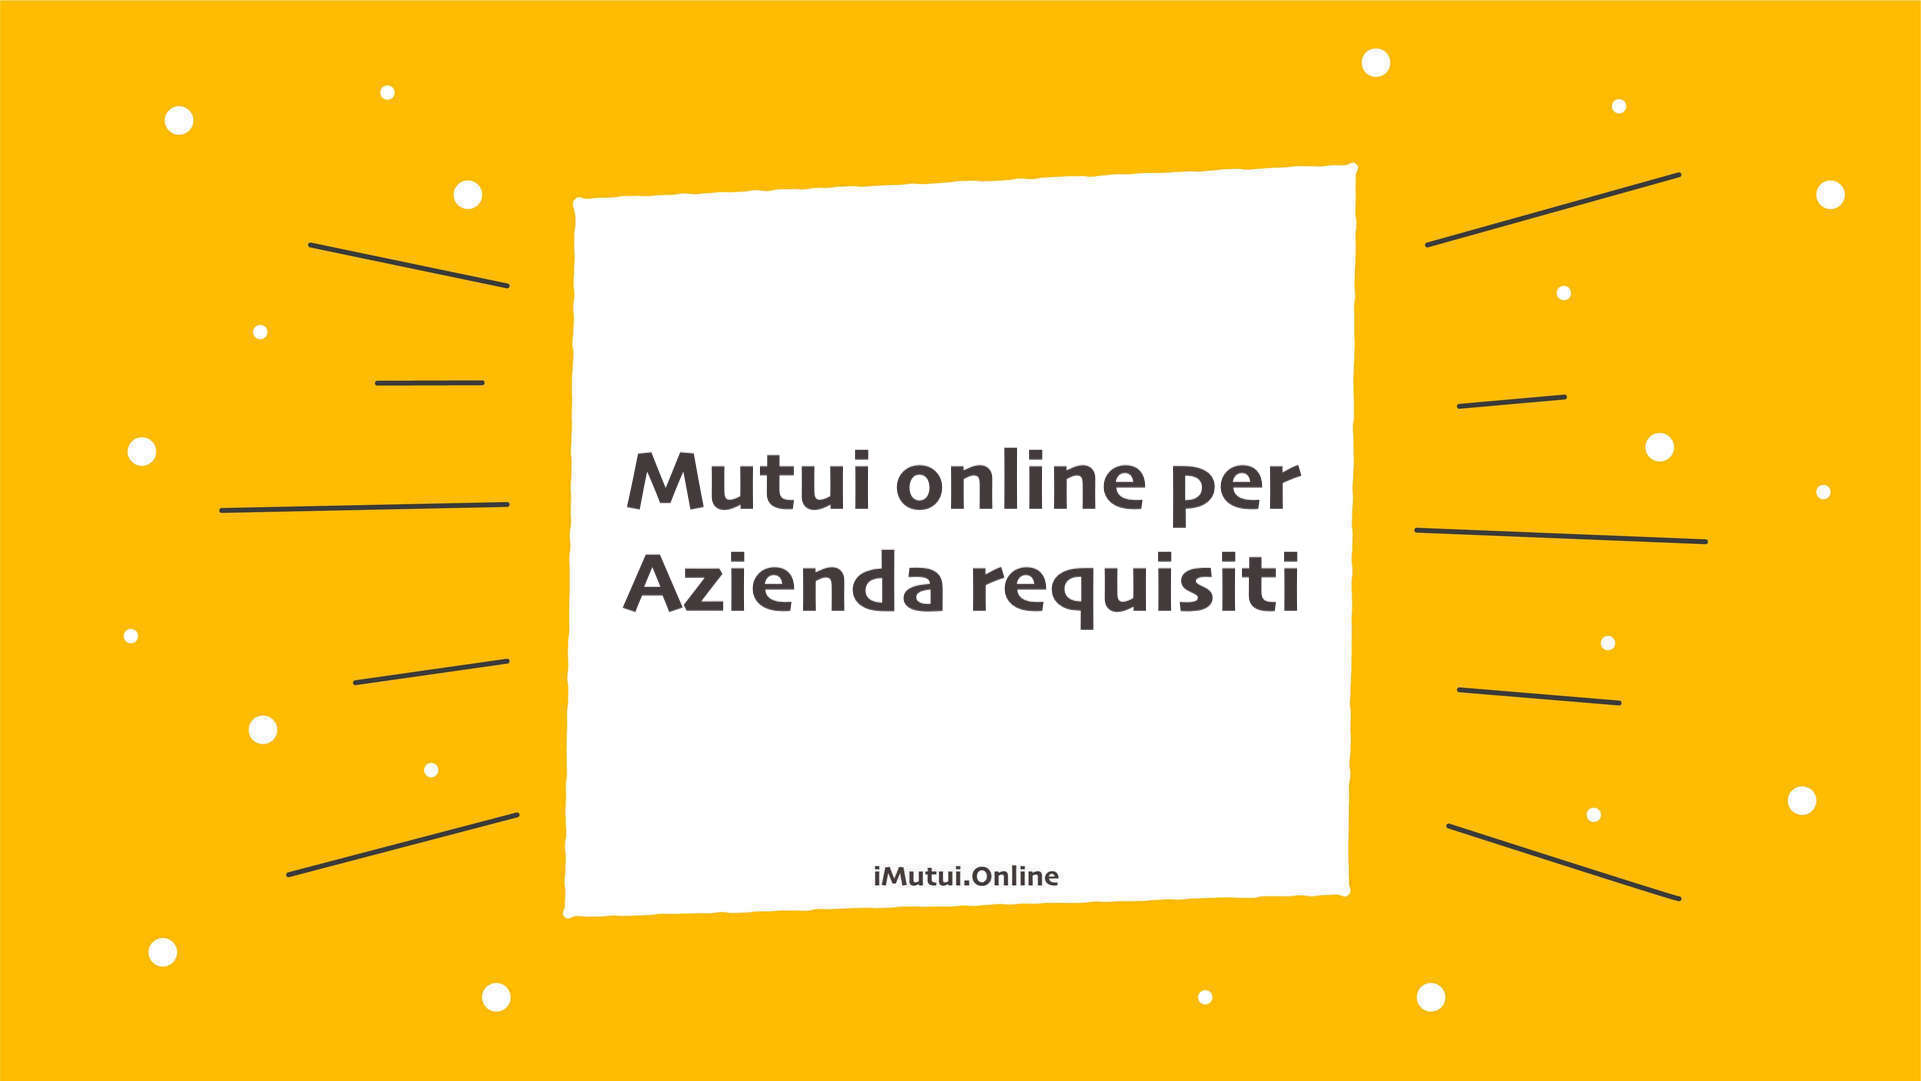 Mutui online per Azienda requisiti